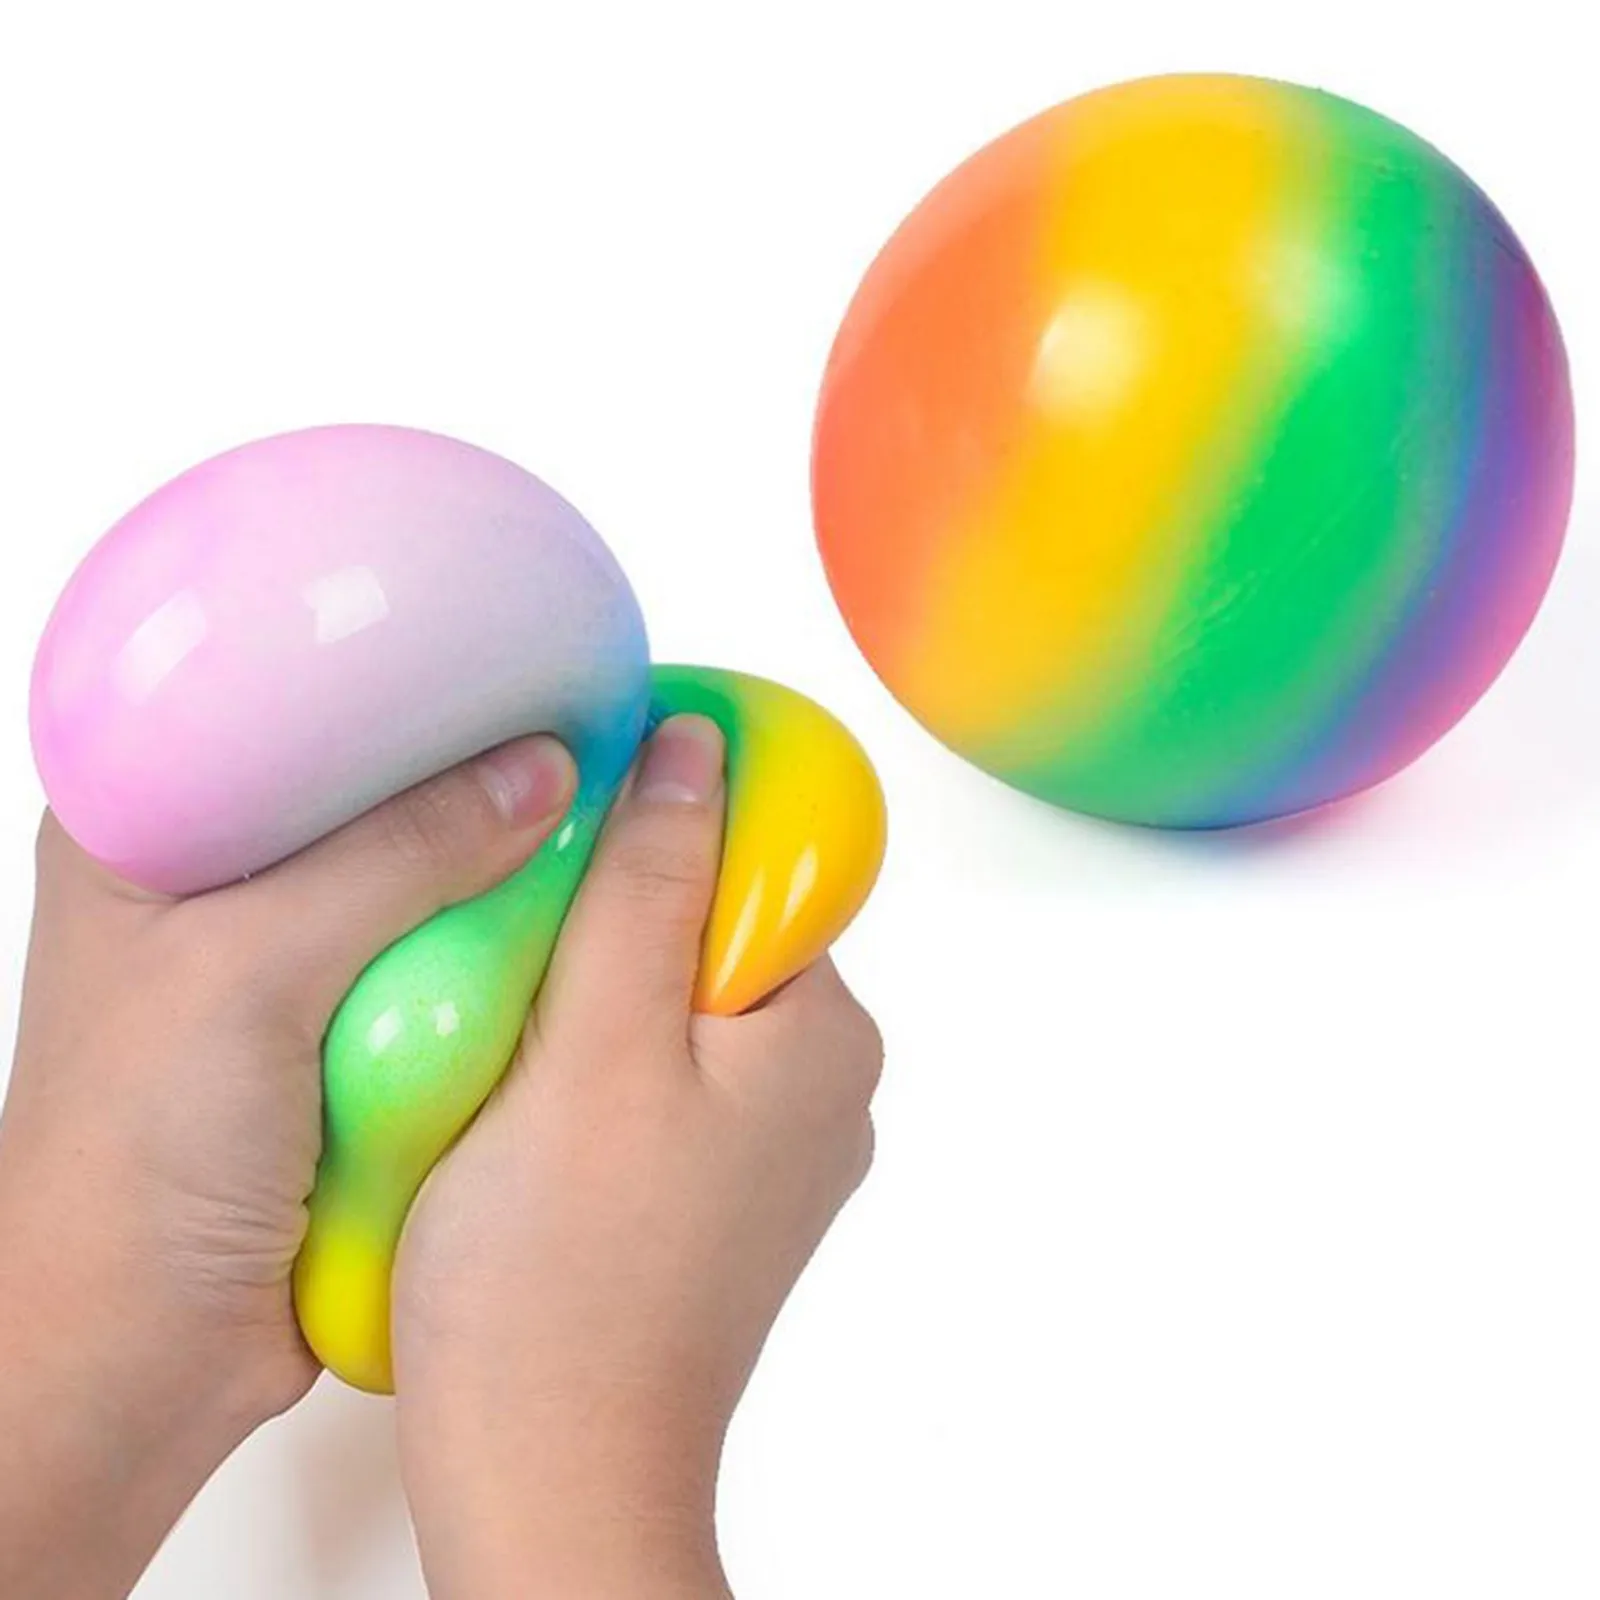 

Красочный мяч, сжимаемая игрушка из мягкой пены ТПР шарики для сжимания, игрушки для детей, веселые игрушки для снятия стресса